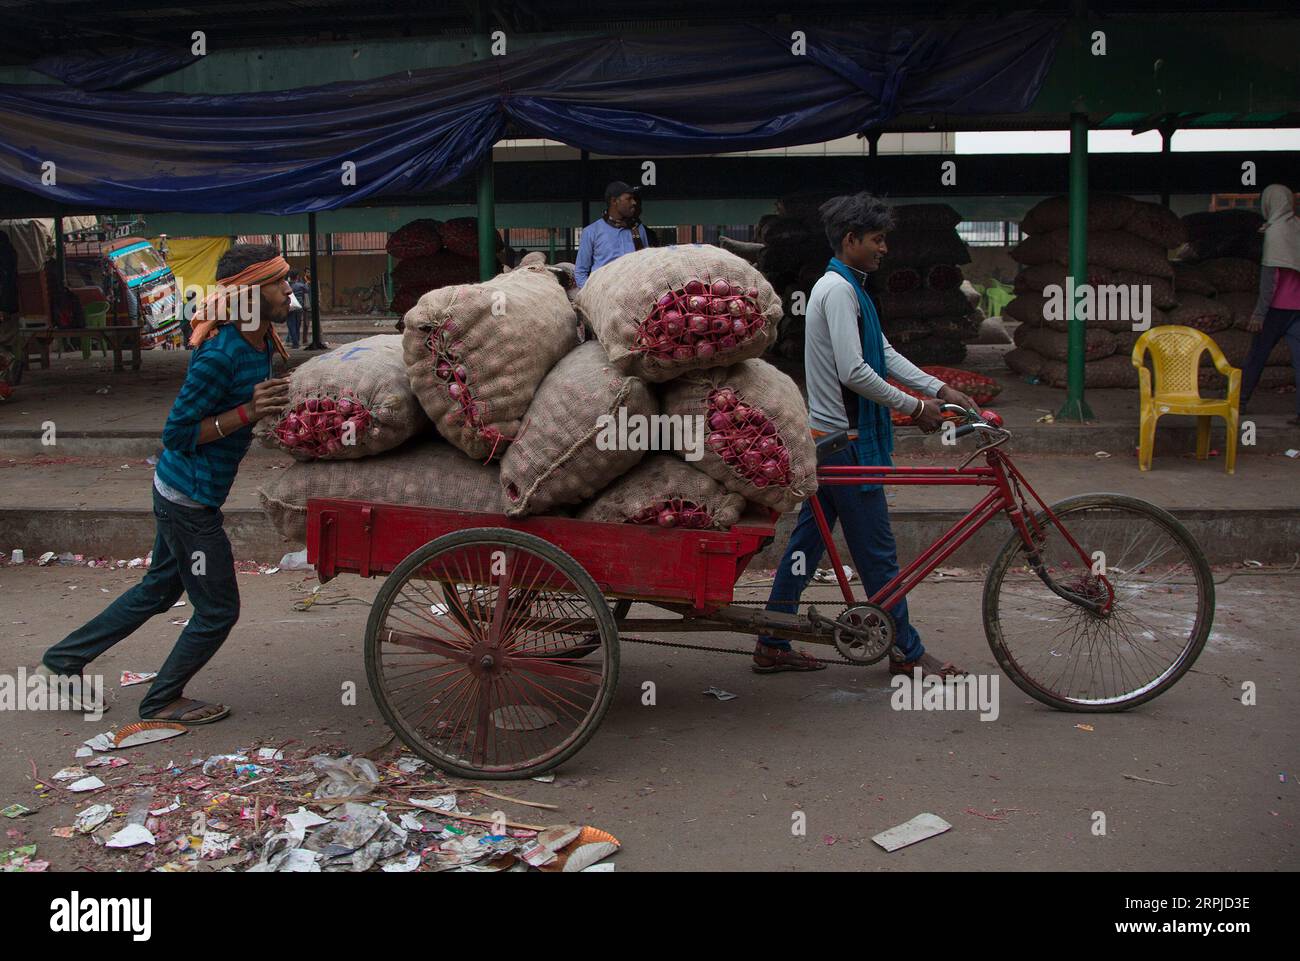 191205 -- NEW DELHI, 5. Dezember 2019 -- Arbeiter transportieren Zwiebelsäcke mit einer Fahrradrikscha auf einem Großmarkt in New Delhi, Indien, am 5. Dezember 2019. Die Zwiebelpreise in den indischen staaten steigen weiter an, als die Regierung versprach, die Speisezwiebeln aus anderen Ländern zu importieren. INDIEN-NEU-DELHI-ZWIEBELPREISE IN DIE HÖHE SCHNELLEN JAVEDXDAR PUBLICATIONXNOTXINXCHN Stockfoto